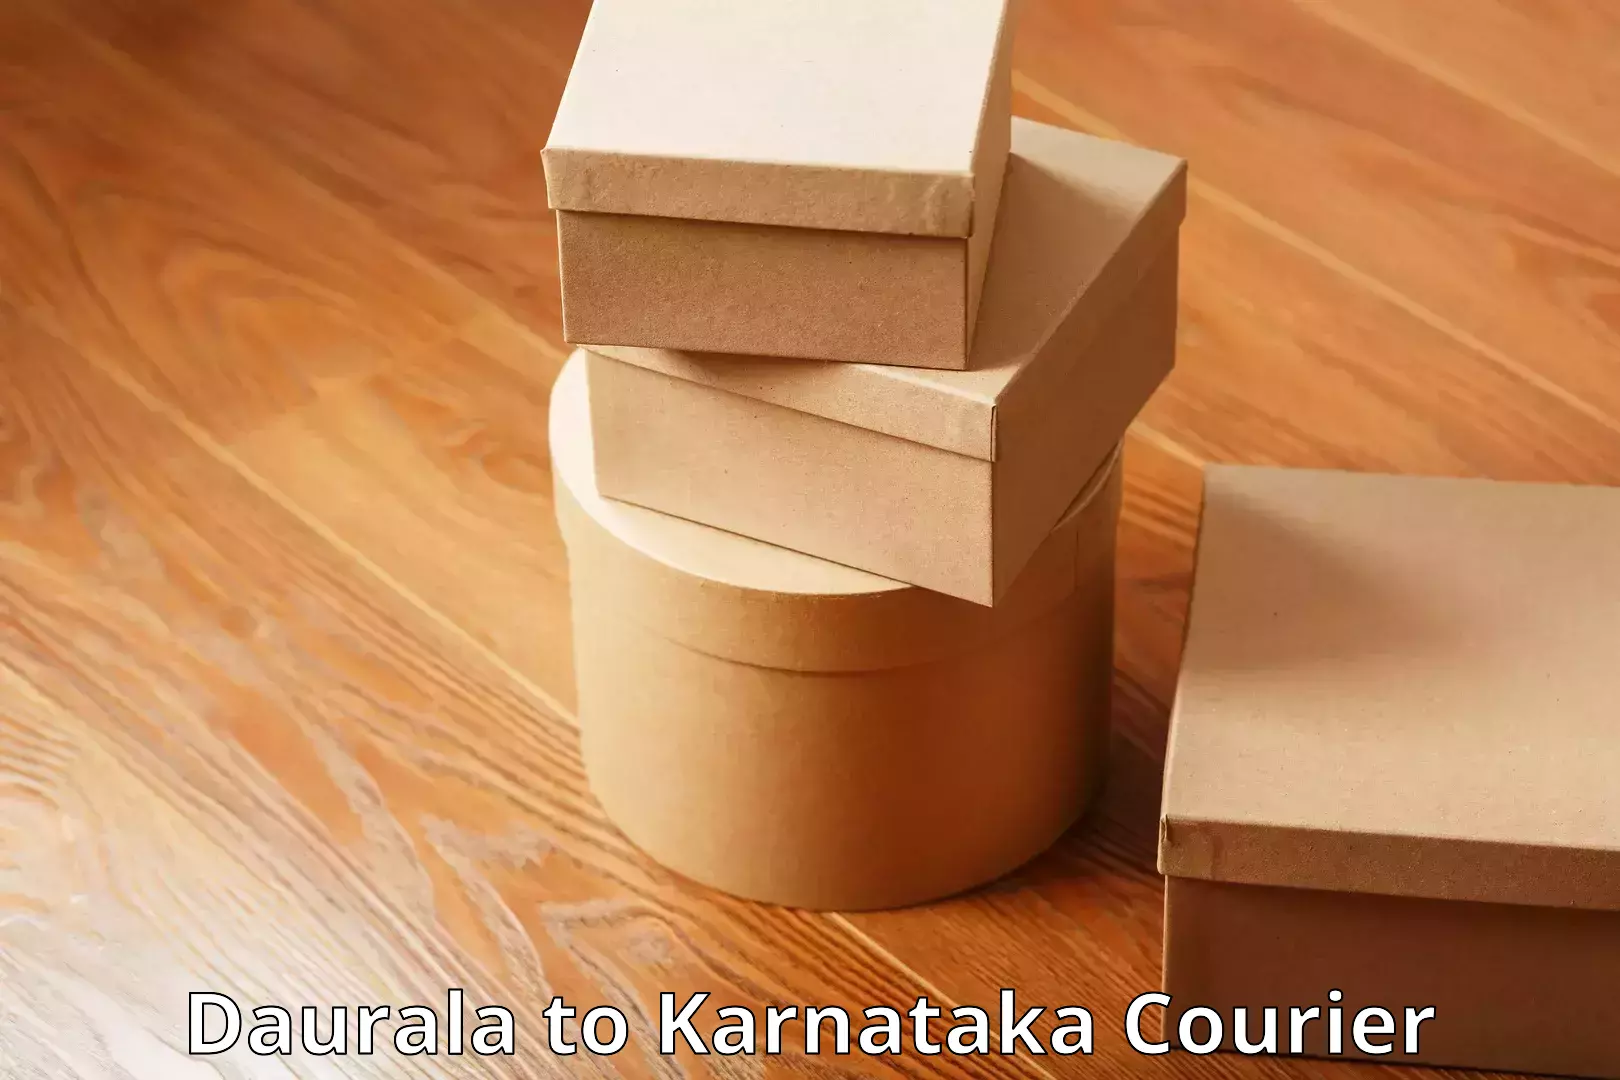 Electronic items luggage shipping Daurala to Karnataka